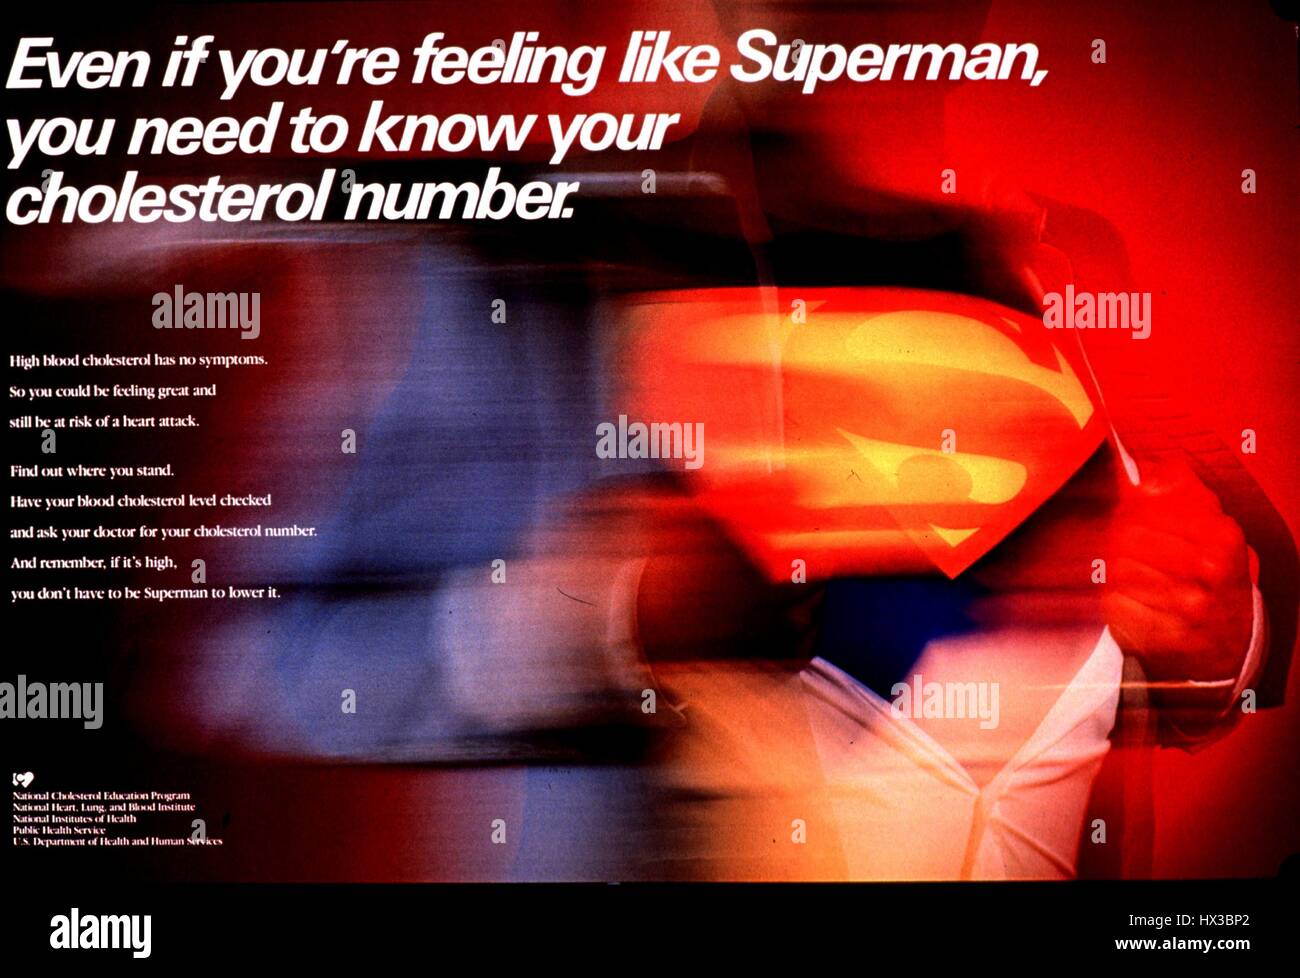 Póster publicado por el Departamento de Salud y Servicios Humanos de los Estados Unidos, mostrando a un hombre rasgando su camisa abierta para revelar una camisa 'Superman', animando a la gente a hacerse la prueba de colesterol, 1980. Cortesía de la Biblioteca Nacional de Medicina. Foto de stock